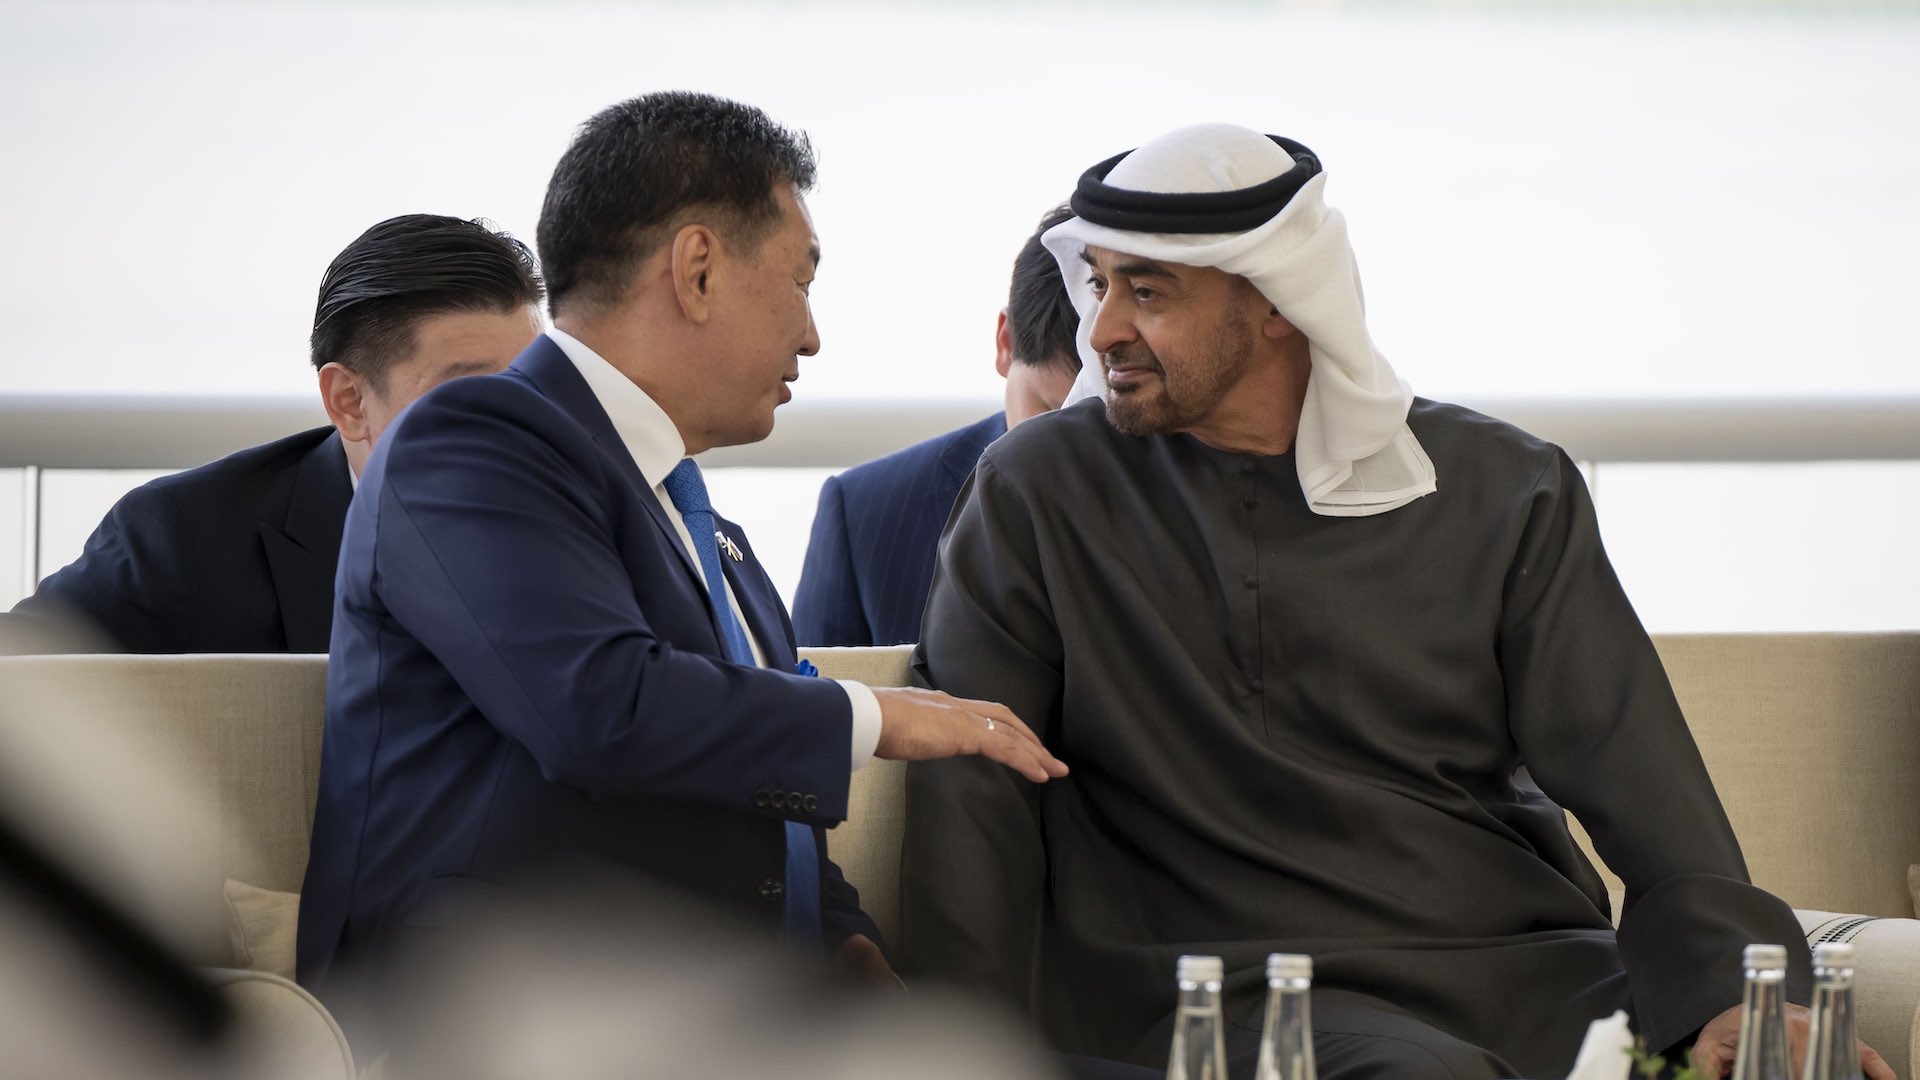 متحدہ عرب امارات اور منگولیا نے ابوظہبی میں اسٹریٹجک معاہدوں کے ساتھ تعلقات کو مضبوط کیا۔